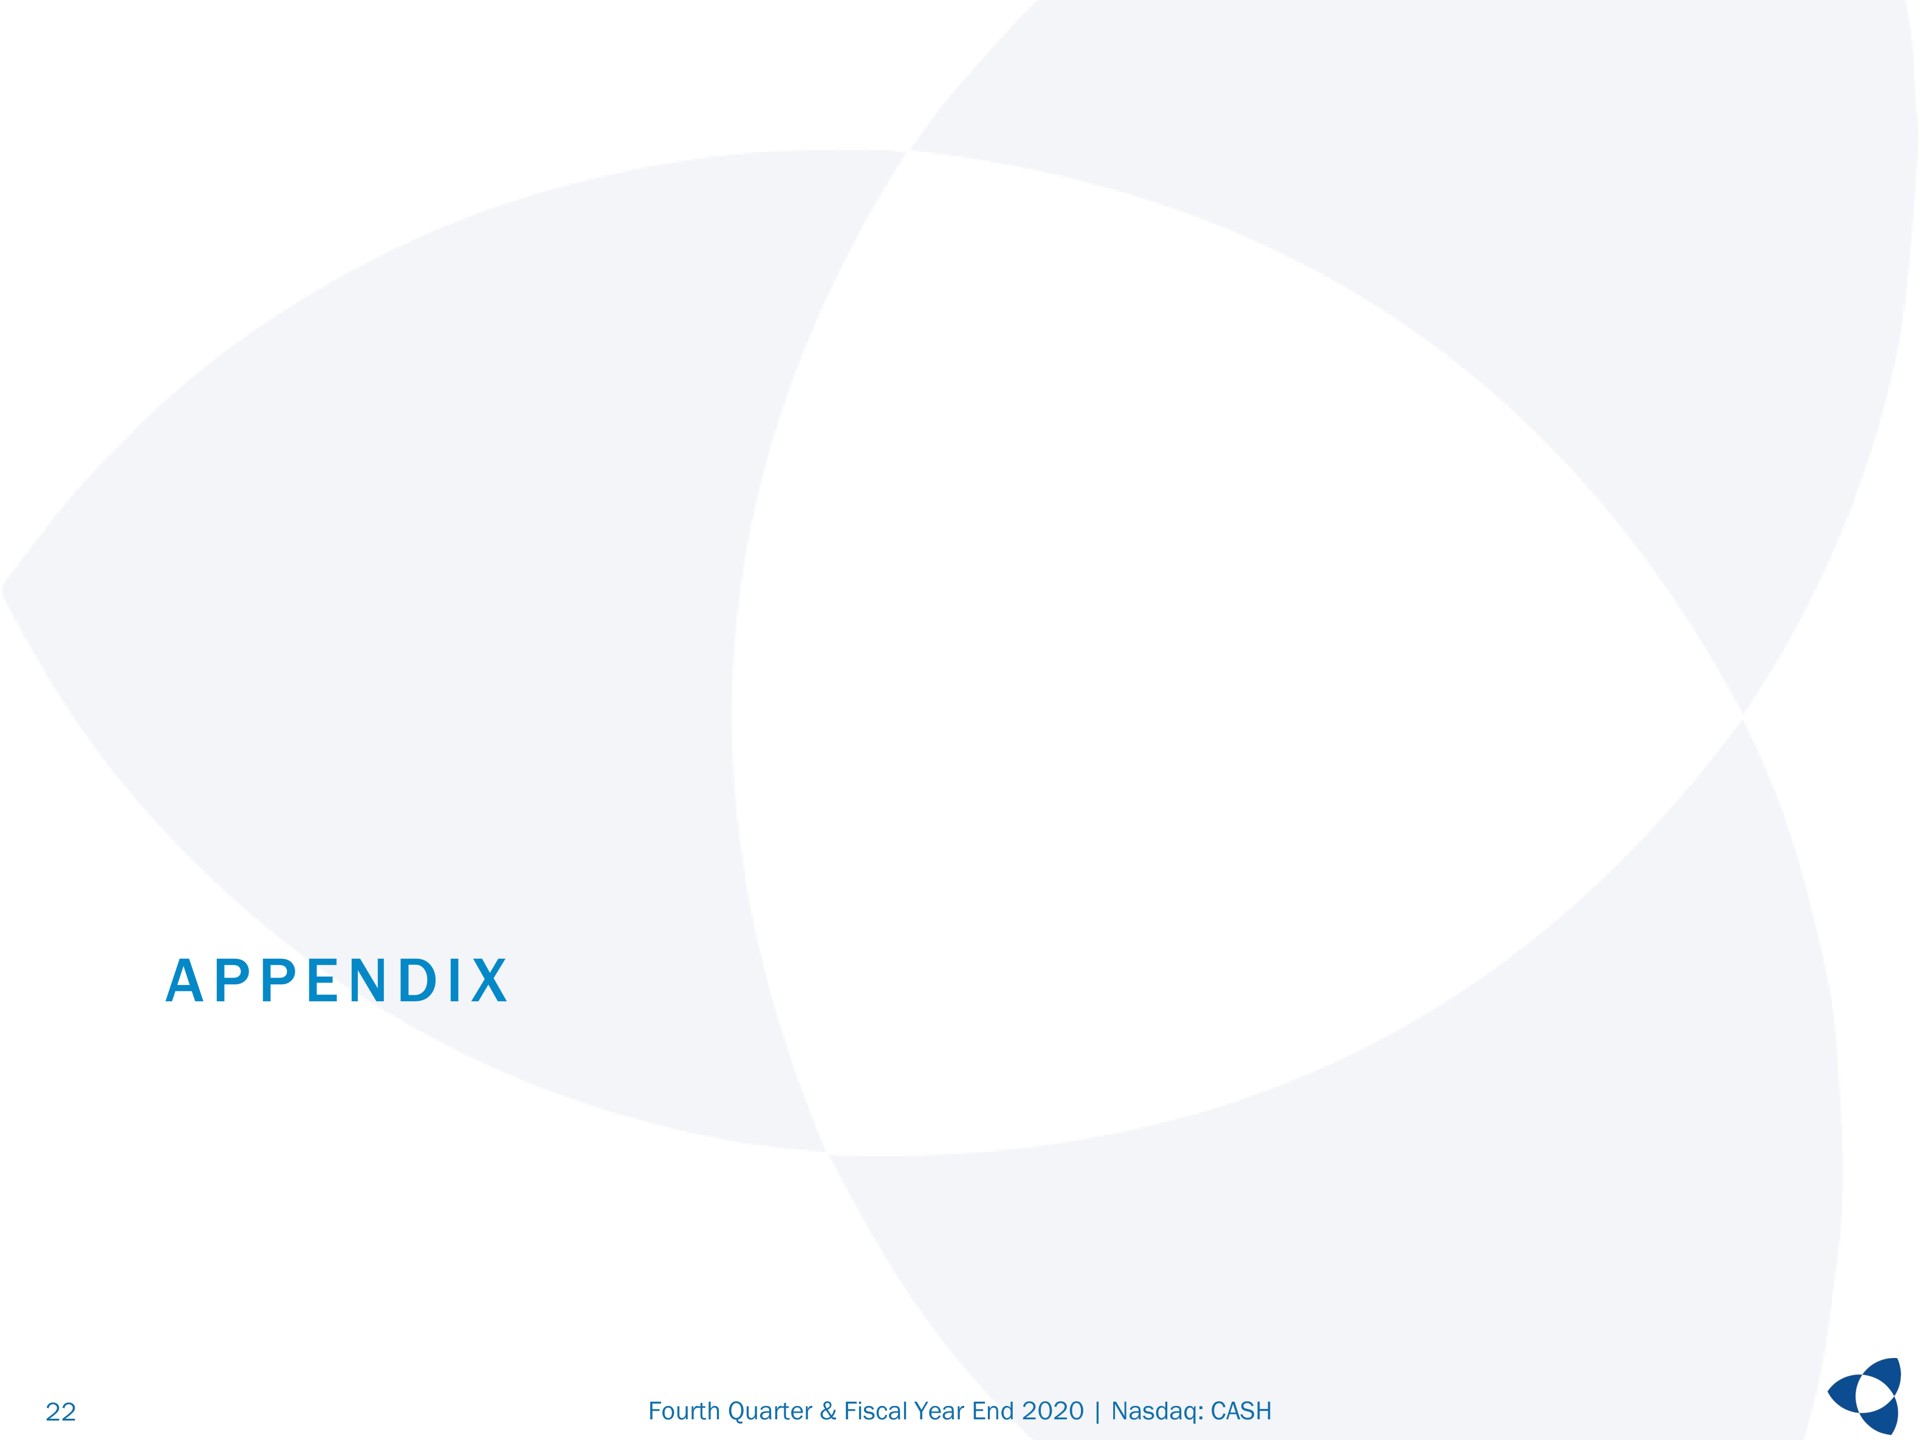 a i appendix | Pathward Financial